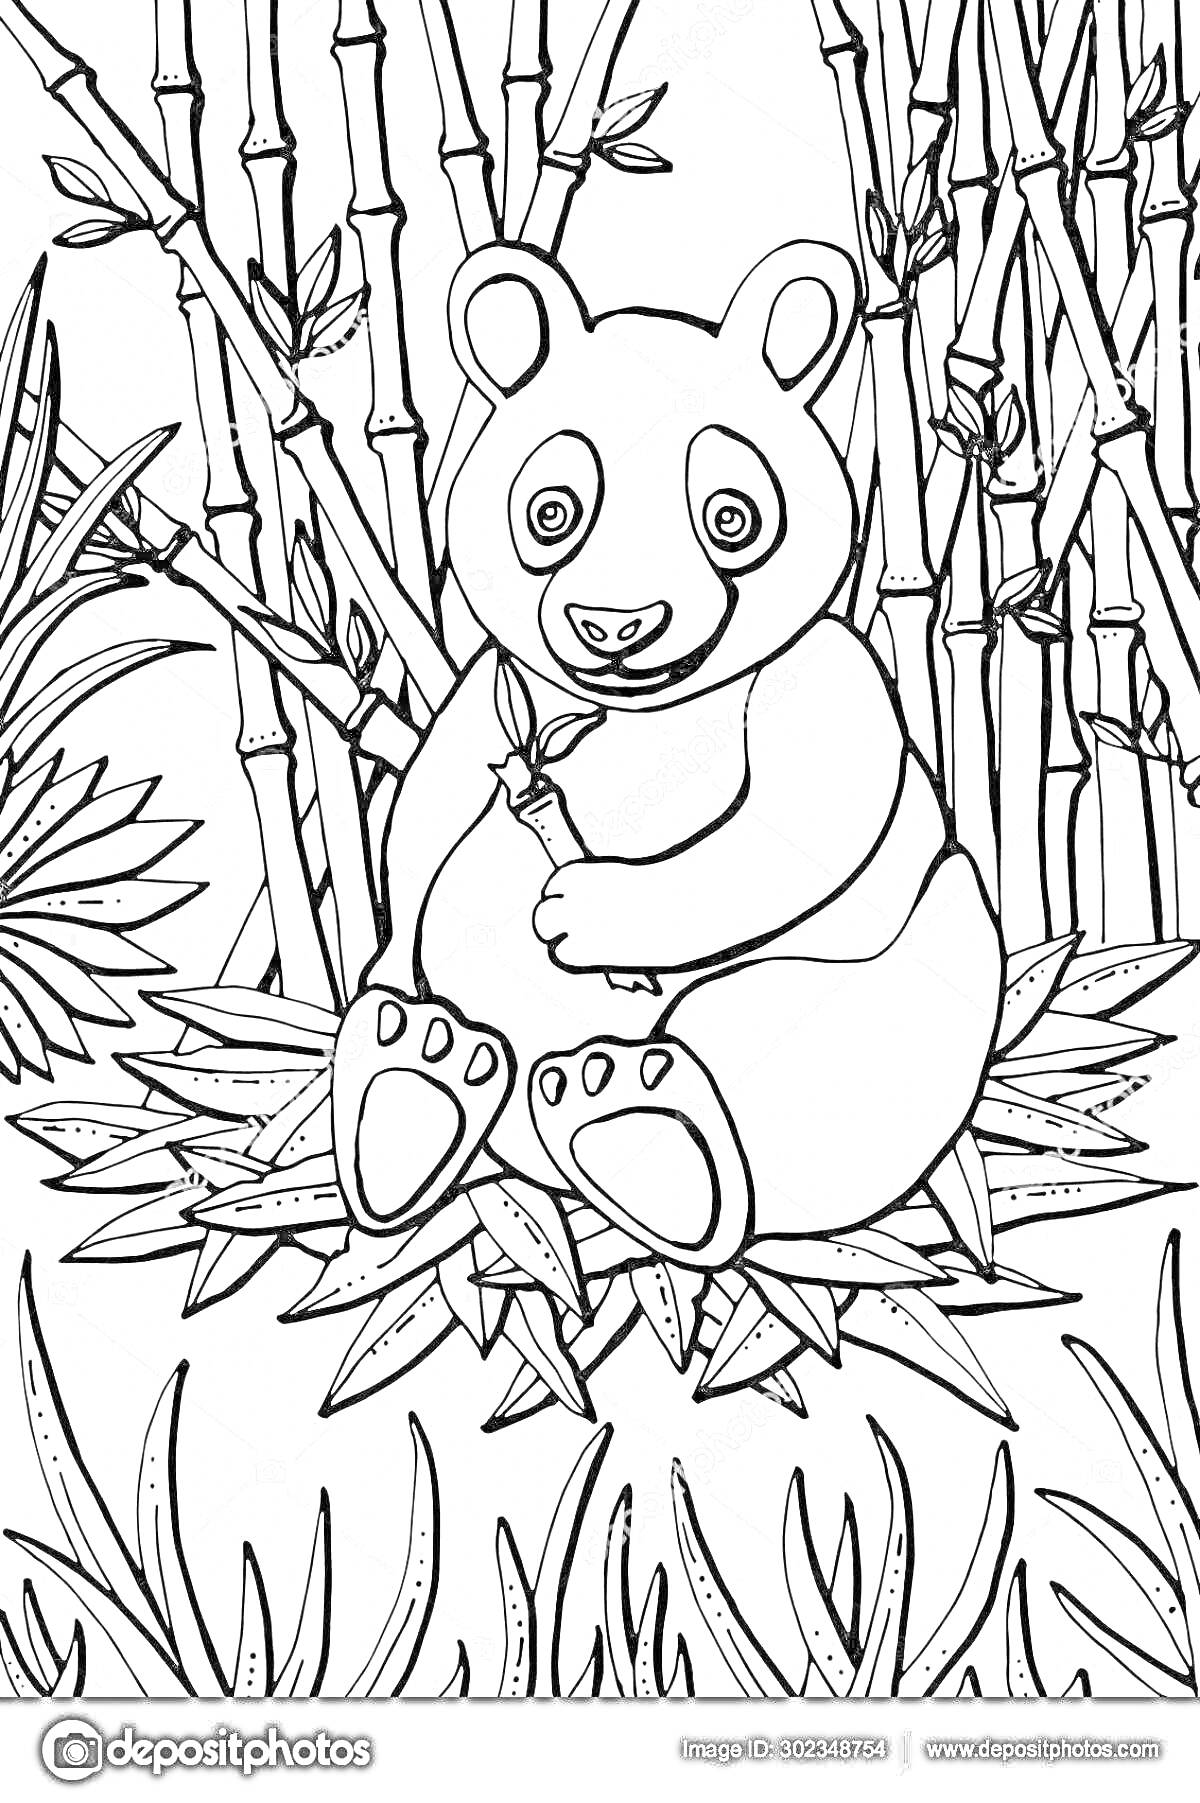 Раскраска Панда, сидящая среди травы на бамбуковых листьях, с веткой бамбука, на фоне стеблей бамбука